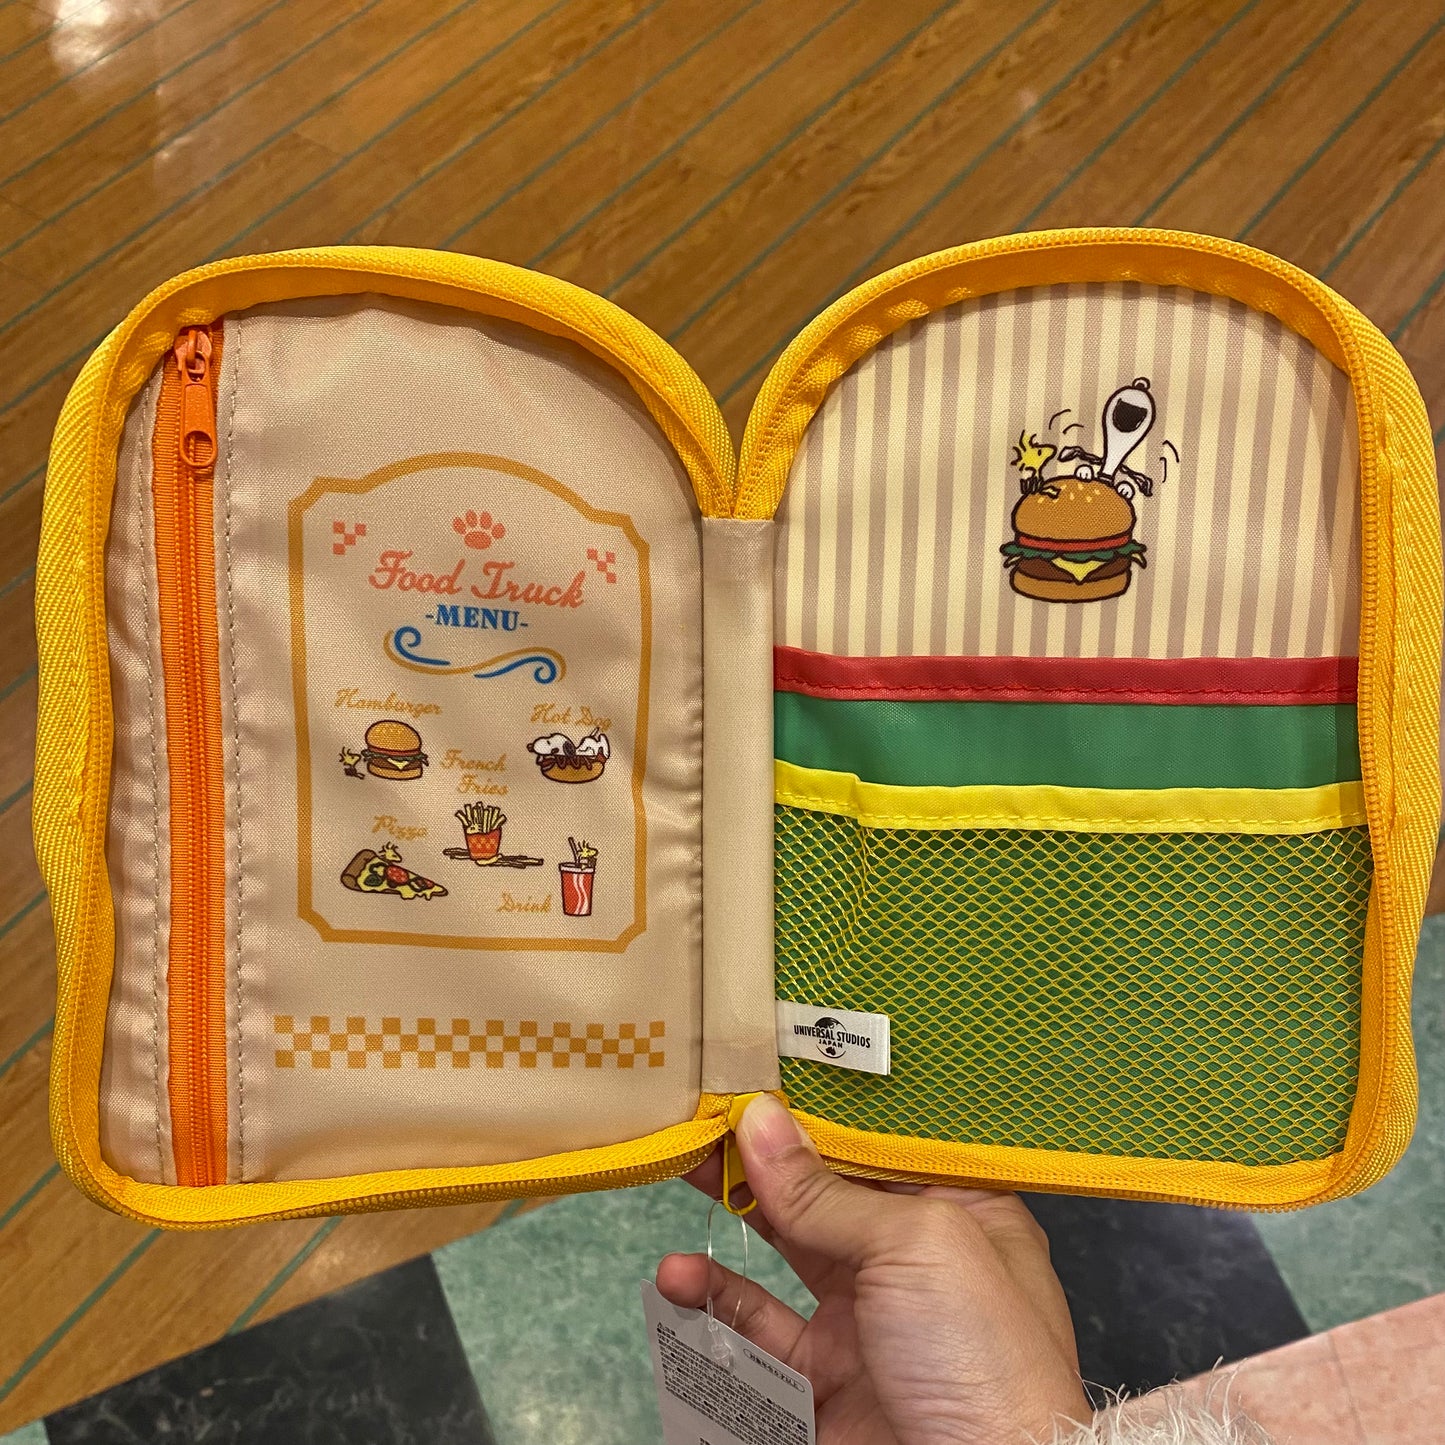 【Order】USJ Peanuts Food Truck Stationery - Gadget case / Eraser Set